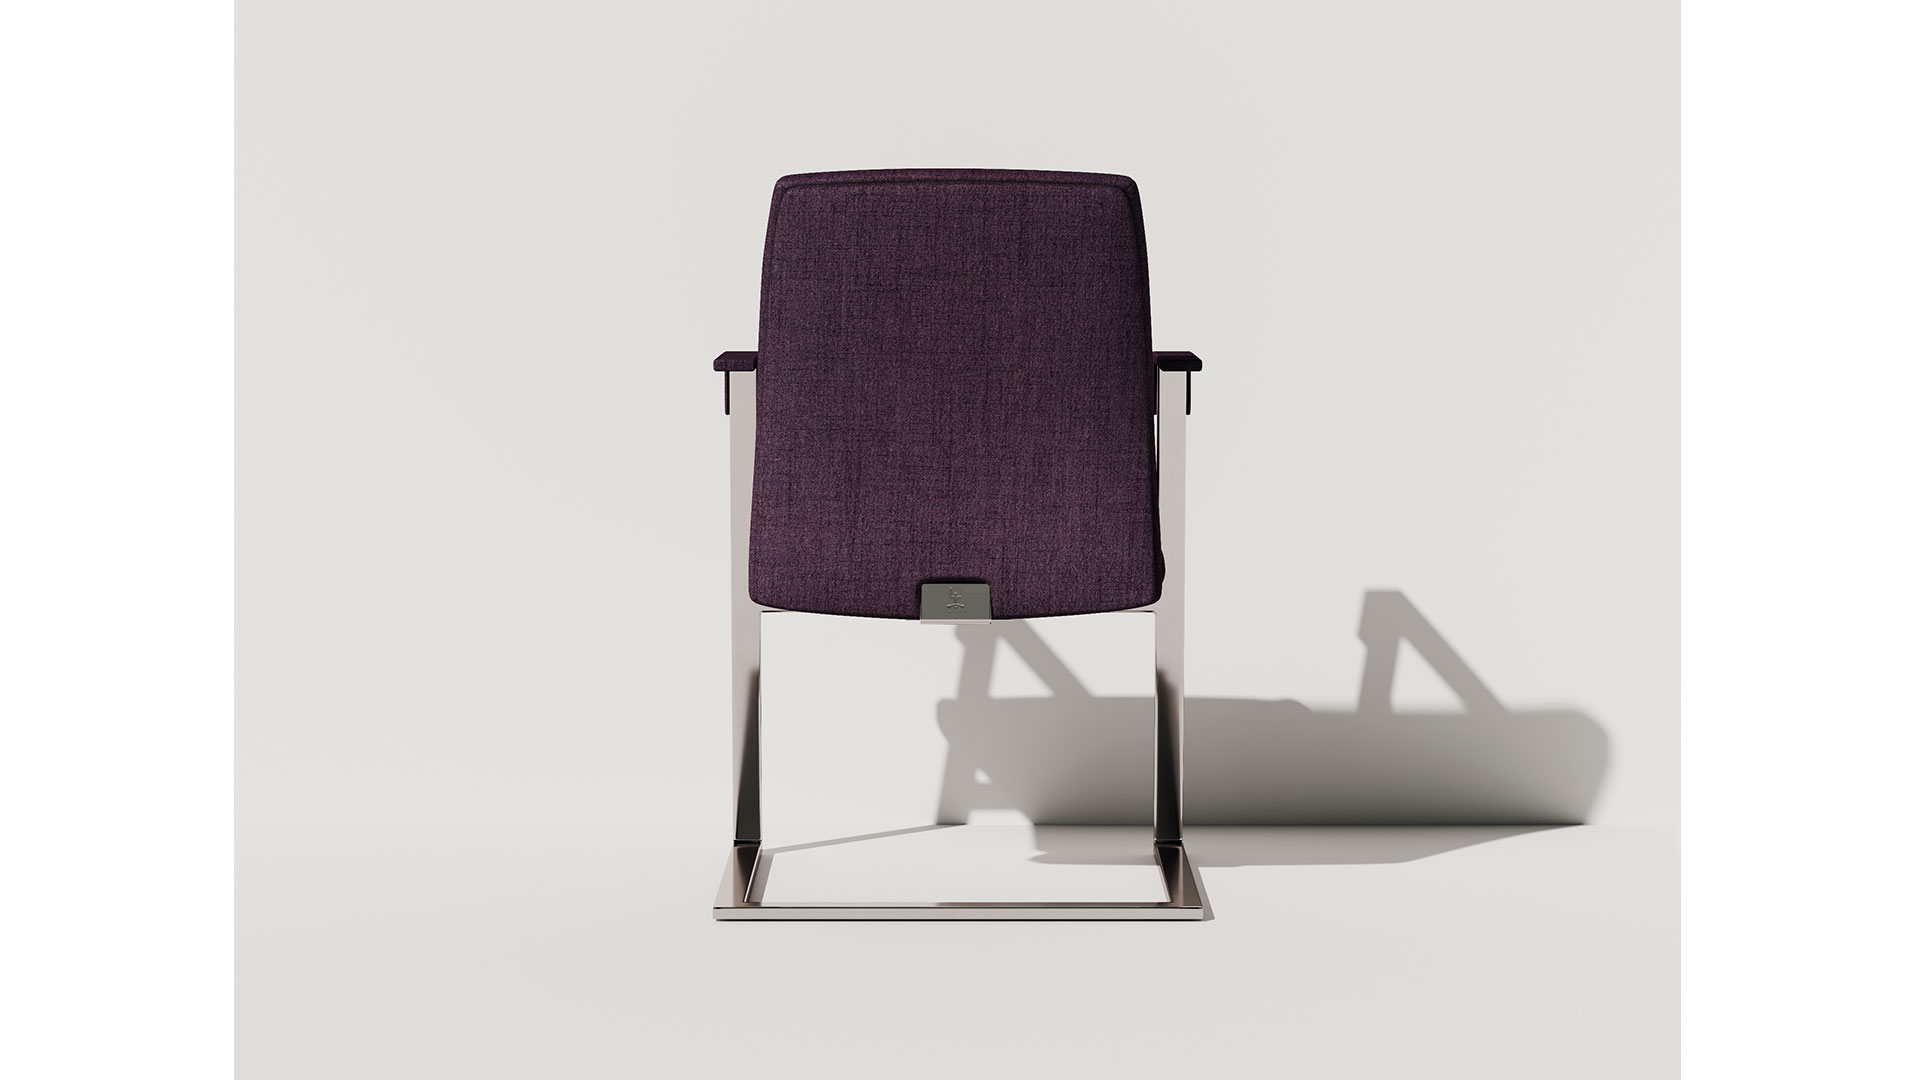 Гостевое кресло имеет закругленную форму спинки